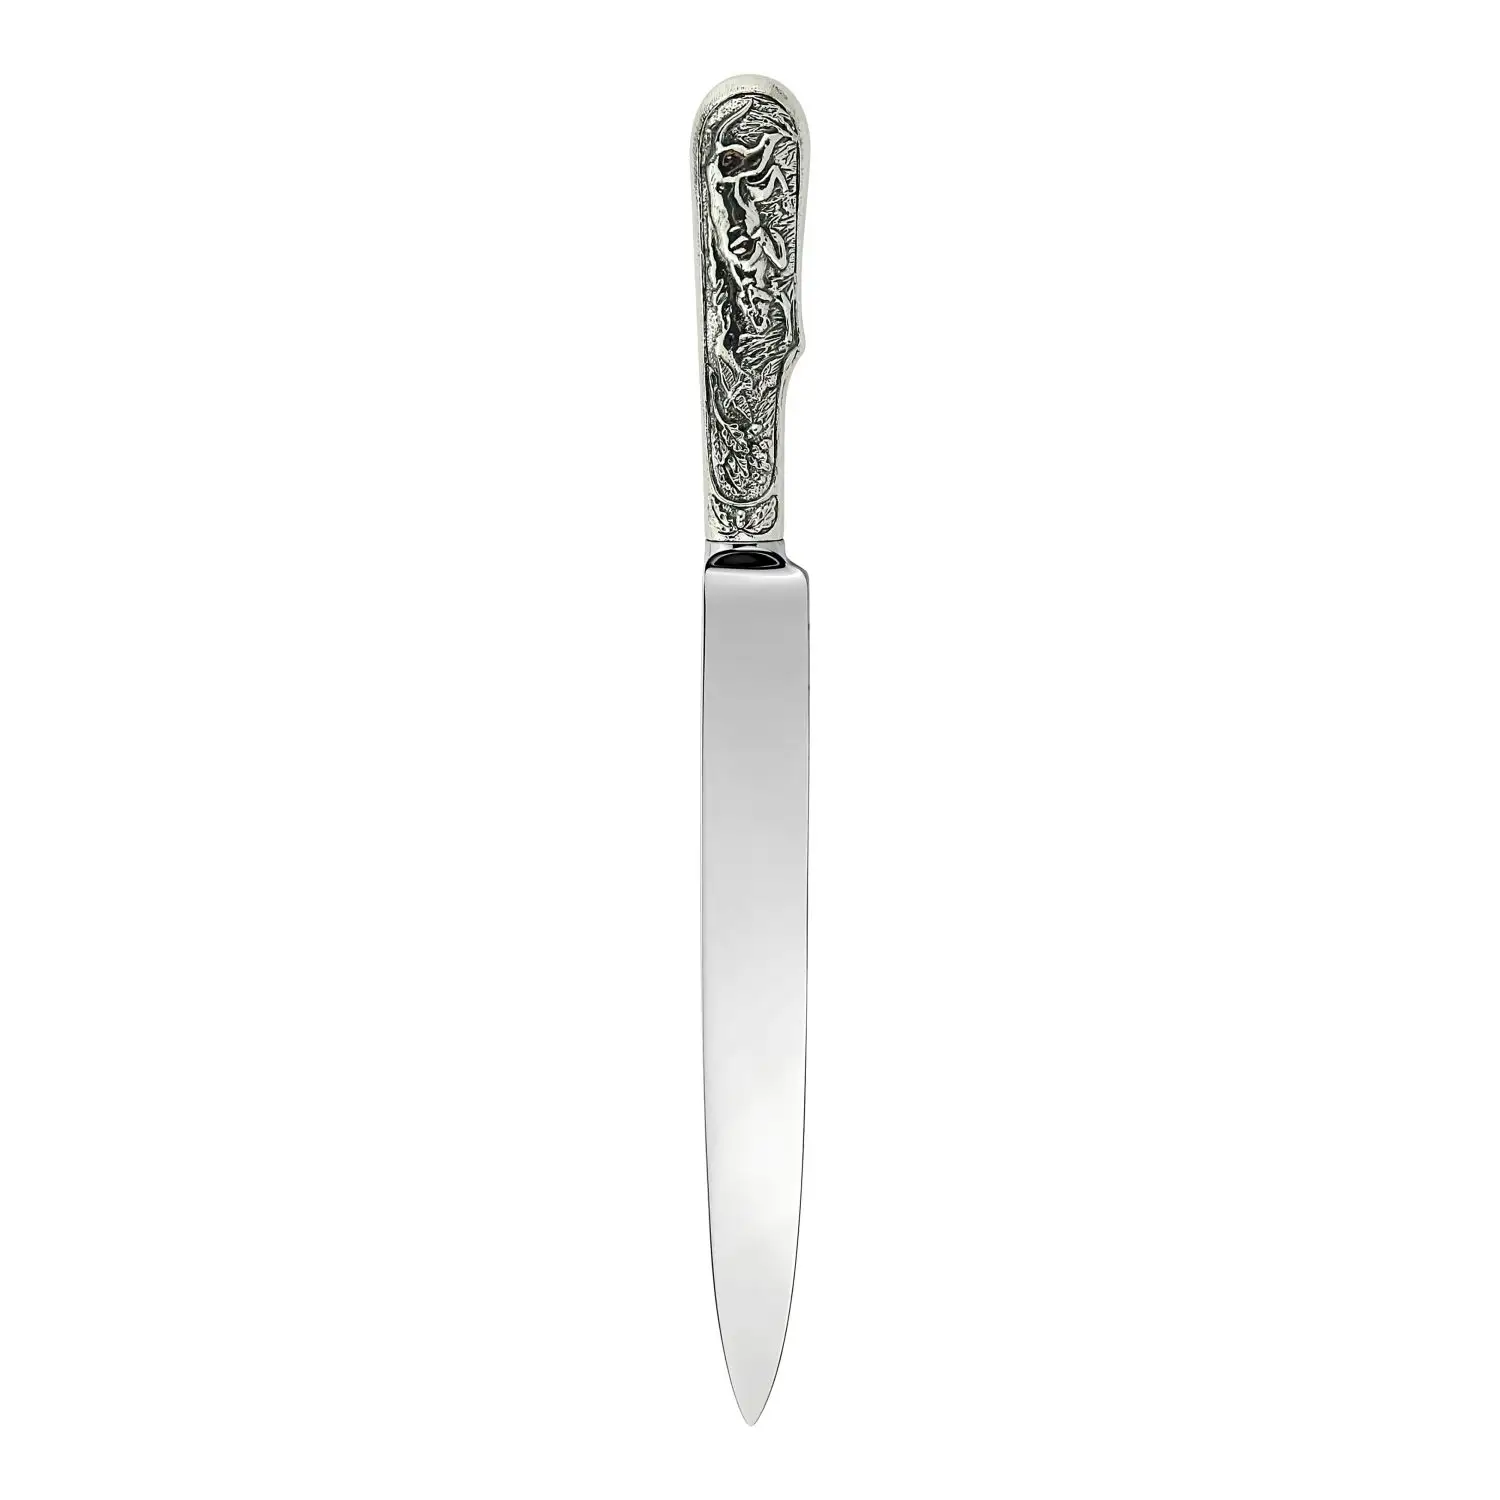 нож д мяса пойнтер l 220 3930 посереб полир с черн Нож для мяса Пойнтер L-220/3930 посеребренный полированный с чернением